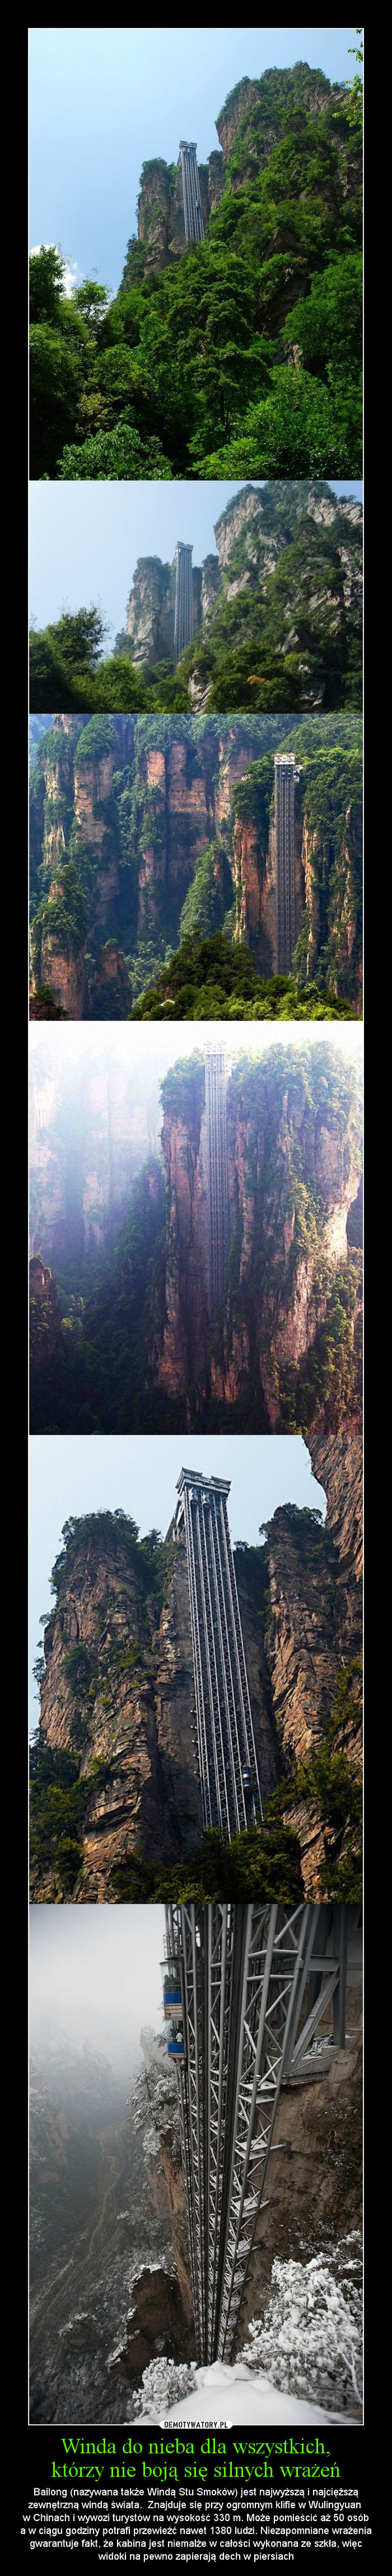 Winda do nieba dla wszystkich,którzy nie boją się silnych wrażeń – Bailong (nazywana także Windą Stu Smoków) jest najwyższą i najcięższą zewnętrzną windą świata.  Znajduje się przy ogromnym klifie w Wulingyuan w Chinach i wywozi turystów na wysokość 330 m. Może pomieścić aż 50 osóba w ciągu godziny potrafi przewieźć nawet 1380 ludzi. Niezapomniane wrażenia gwarantuje fakt, że kabina jest niemalże w całości wykonana ze szkła, więc widoki na pewno zapierają dech w piersiach 